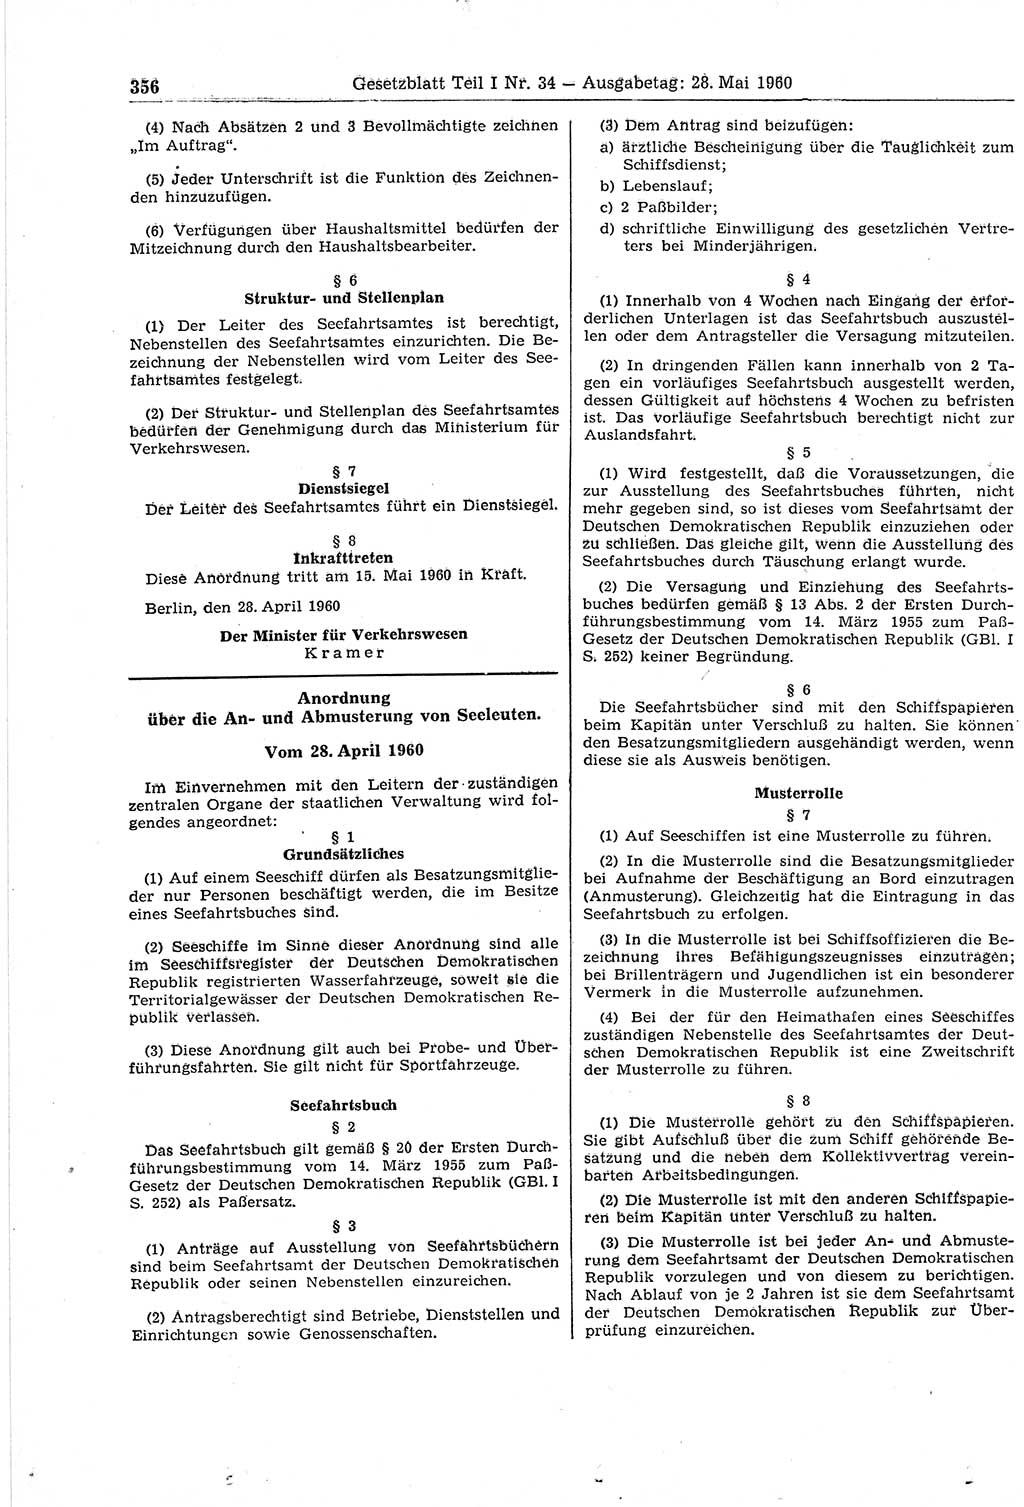 Gesetzblatt (GBl.) der Deutschen Demokratischen Republik (DDR) Teil Ⅰ 1960, Seite 356 (GBl. DDR Ⅰ 1960, S. 356)